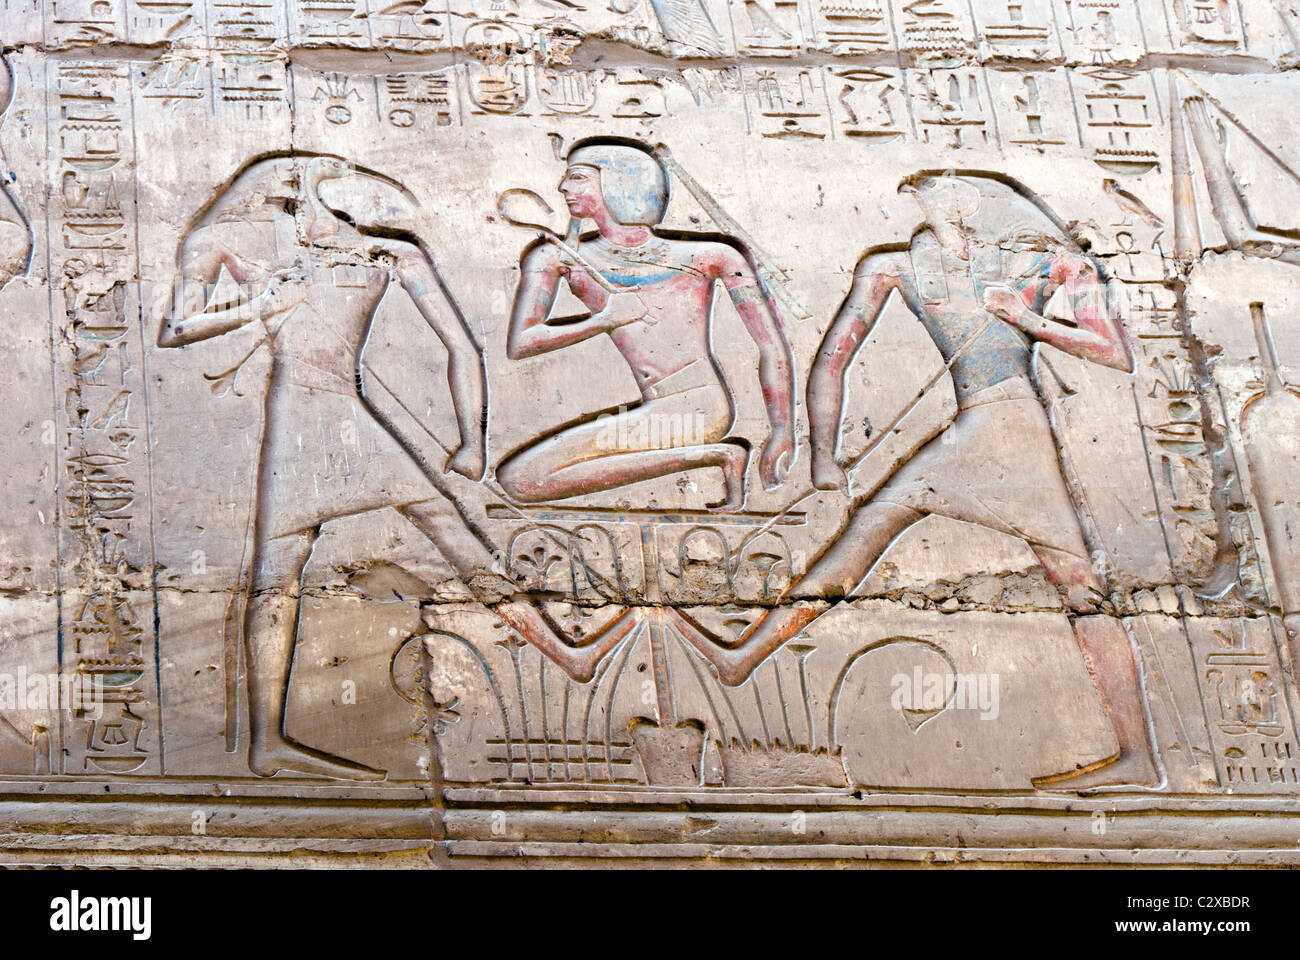 Simboli geroglifico - Tempio di Karnak complesso - Luxor, l'Alto Egitto Foto Stock